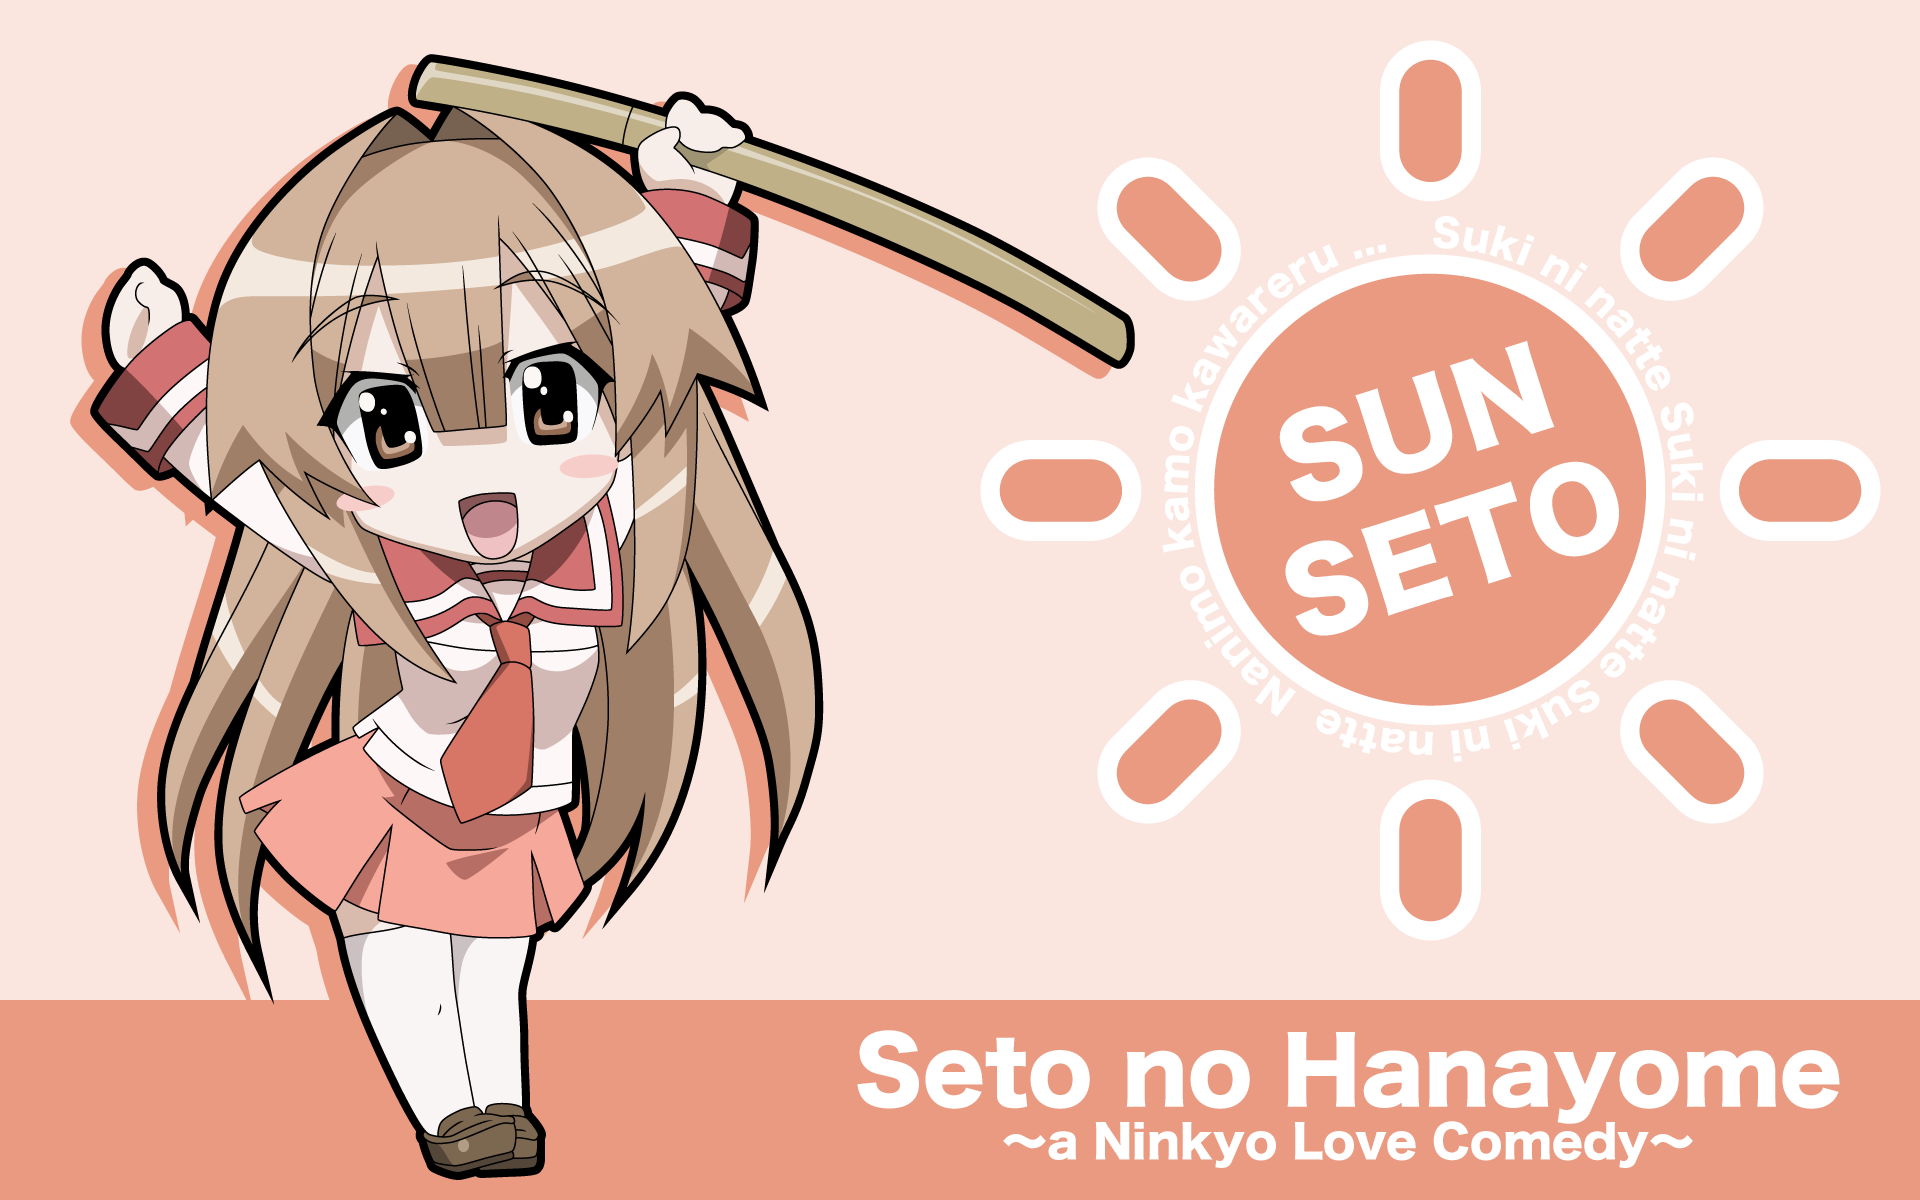 Anime 1920x1200 Seto no Hanayome anime girls Sun Seto